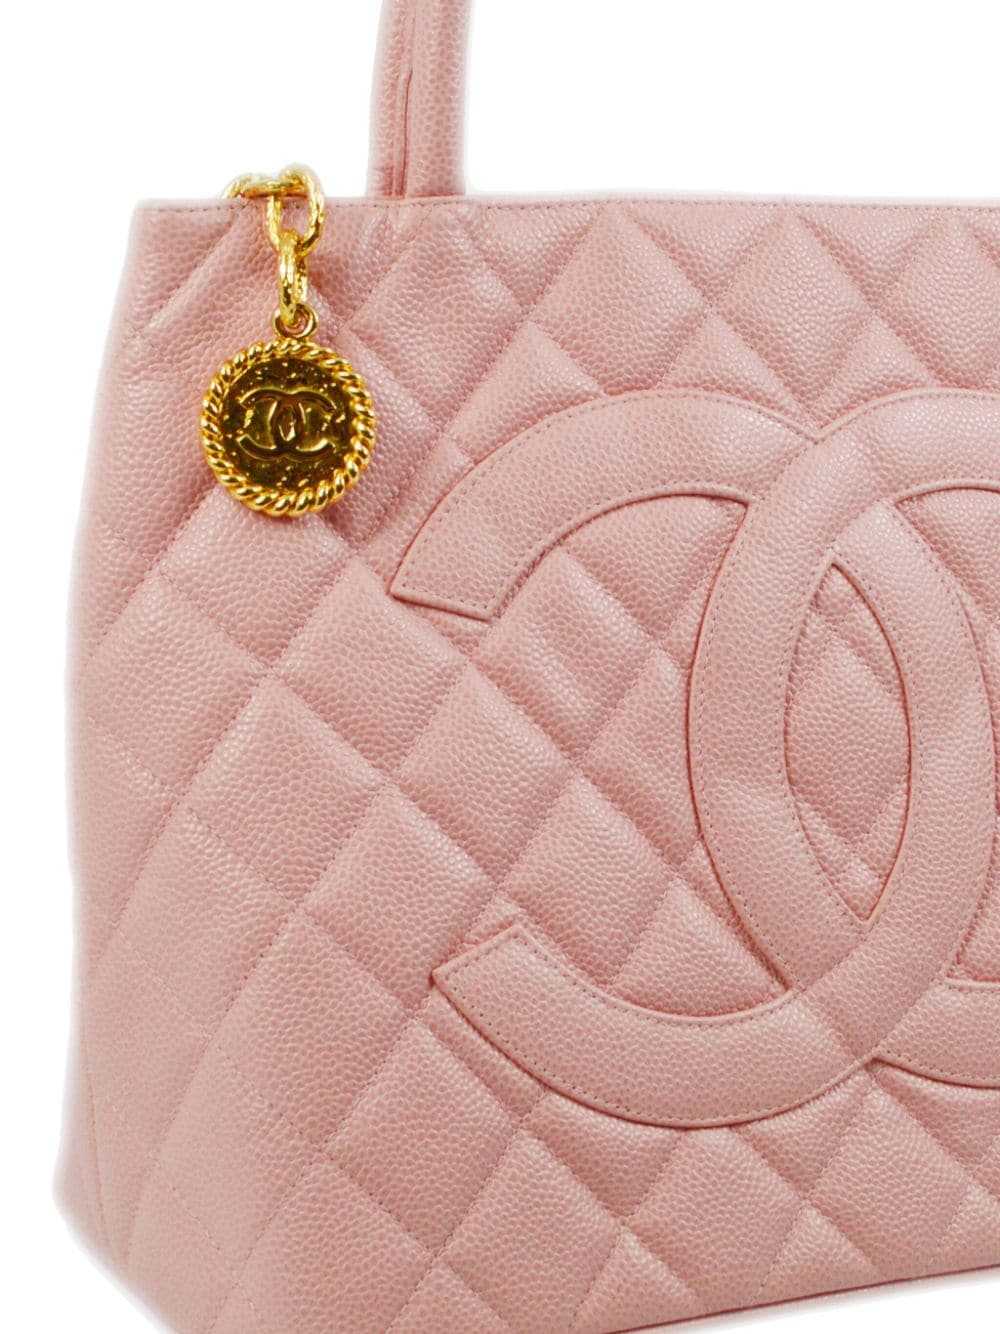 CHANEL Pre-Owned 2003 Medallion handbag - Pink - image 3